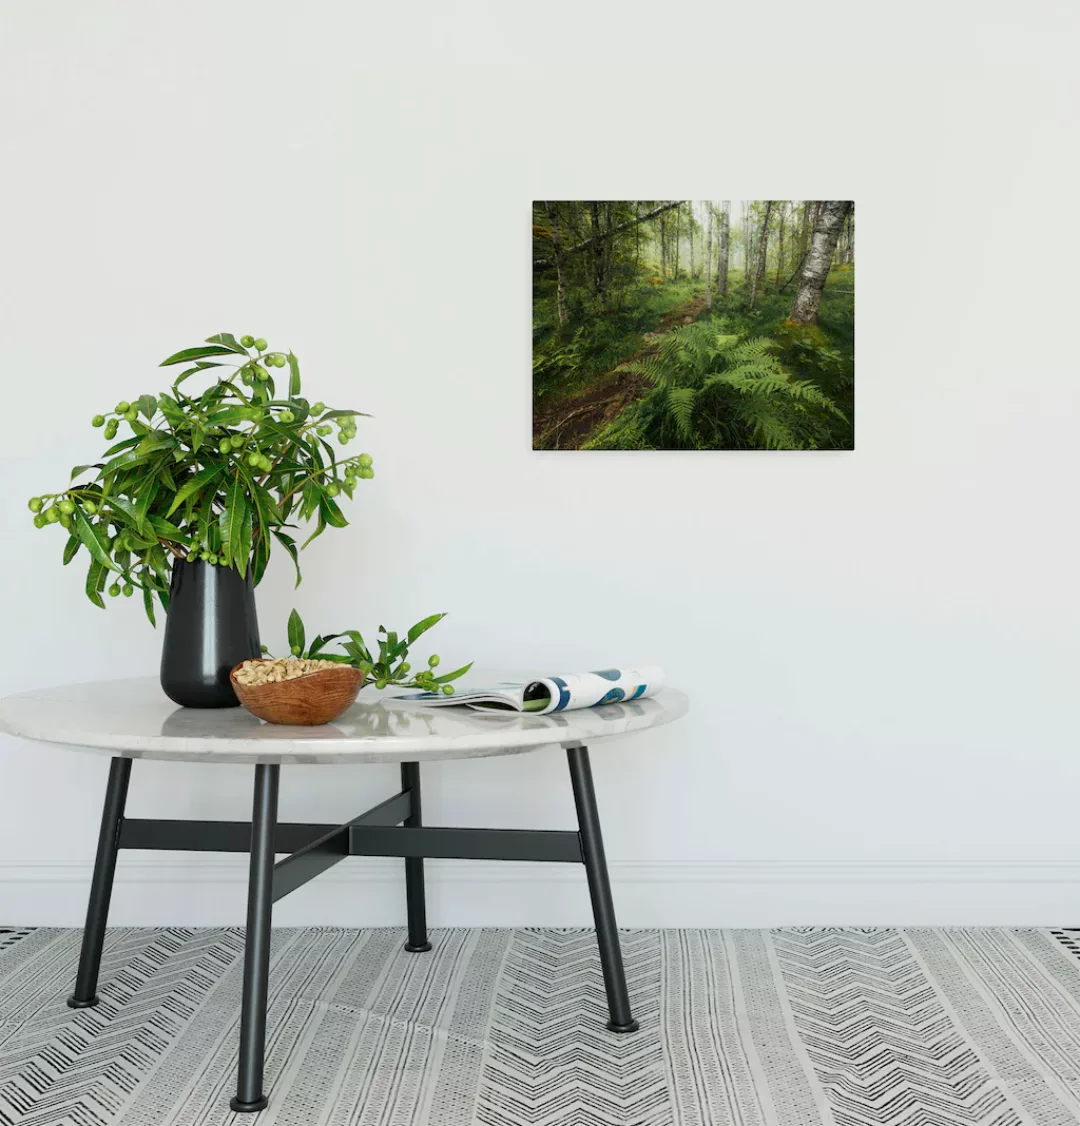 Komar Leinwandbild "Keilrahmenbild - Mystic Birch Grove - Größe 40 x 30 cm" günstig online kaufen